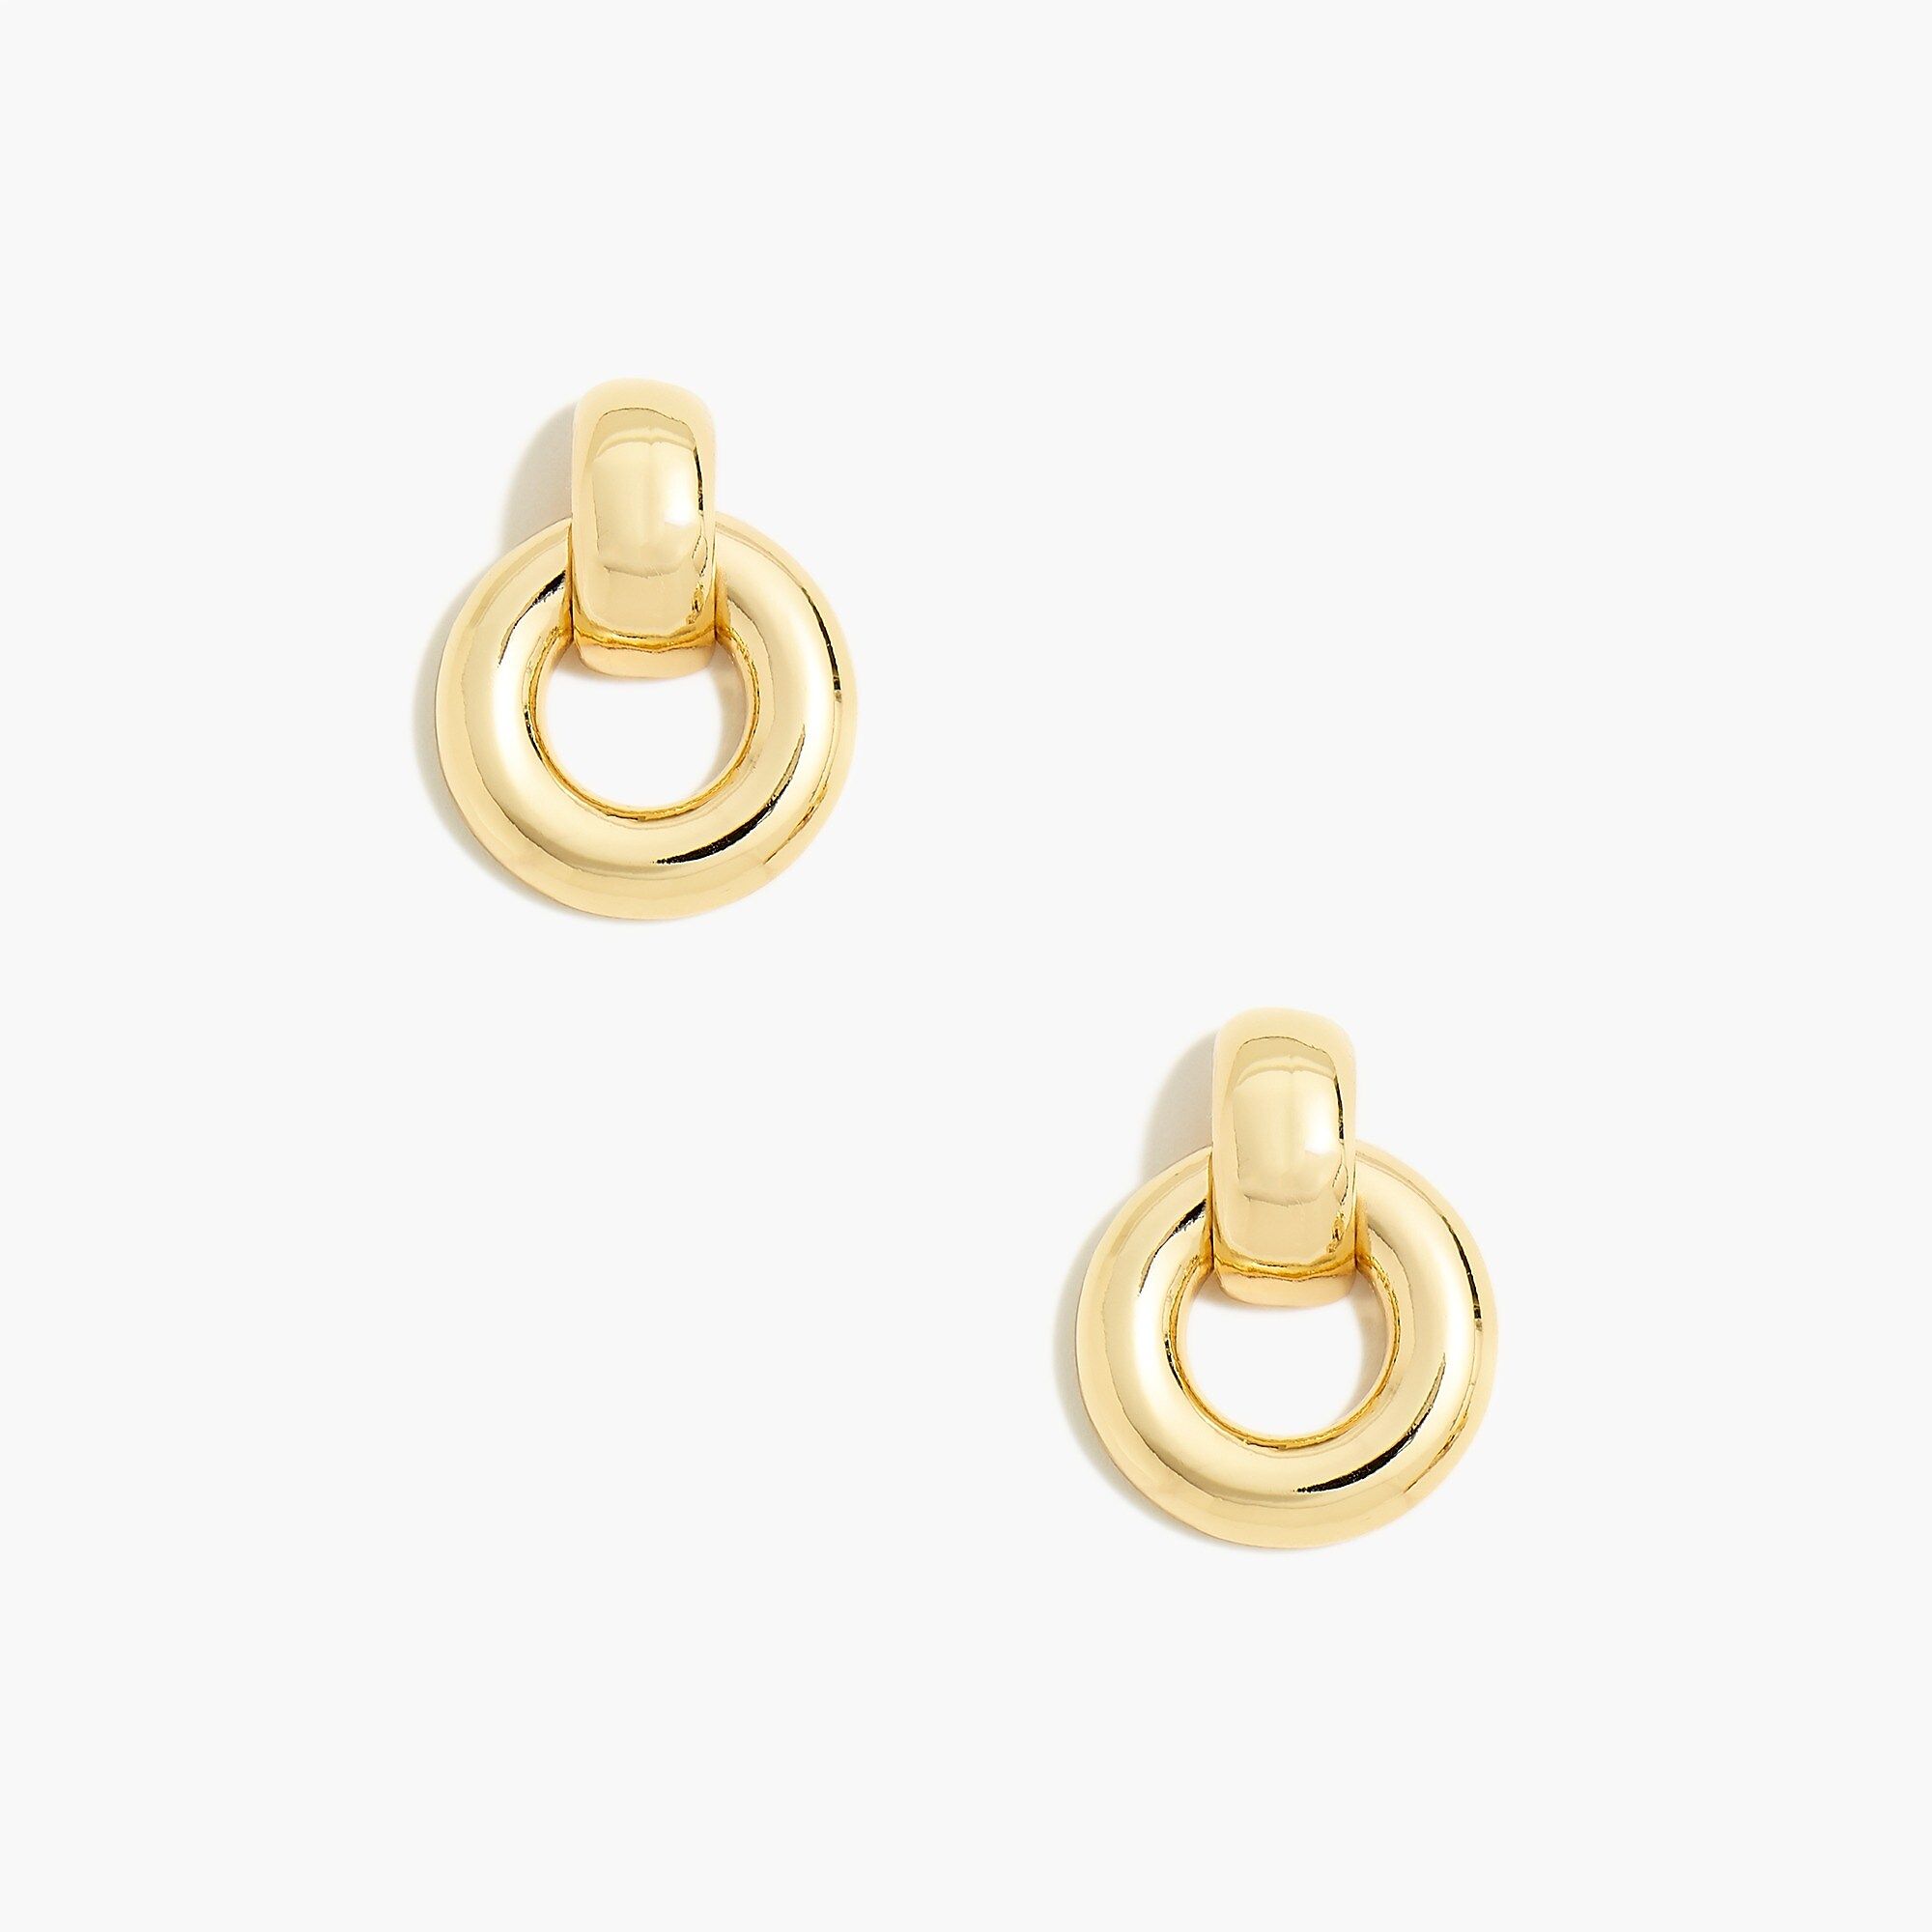 Gold door knocker earrings | J.Crew Factory